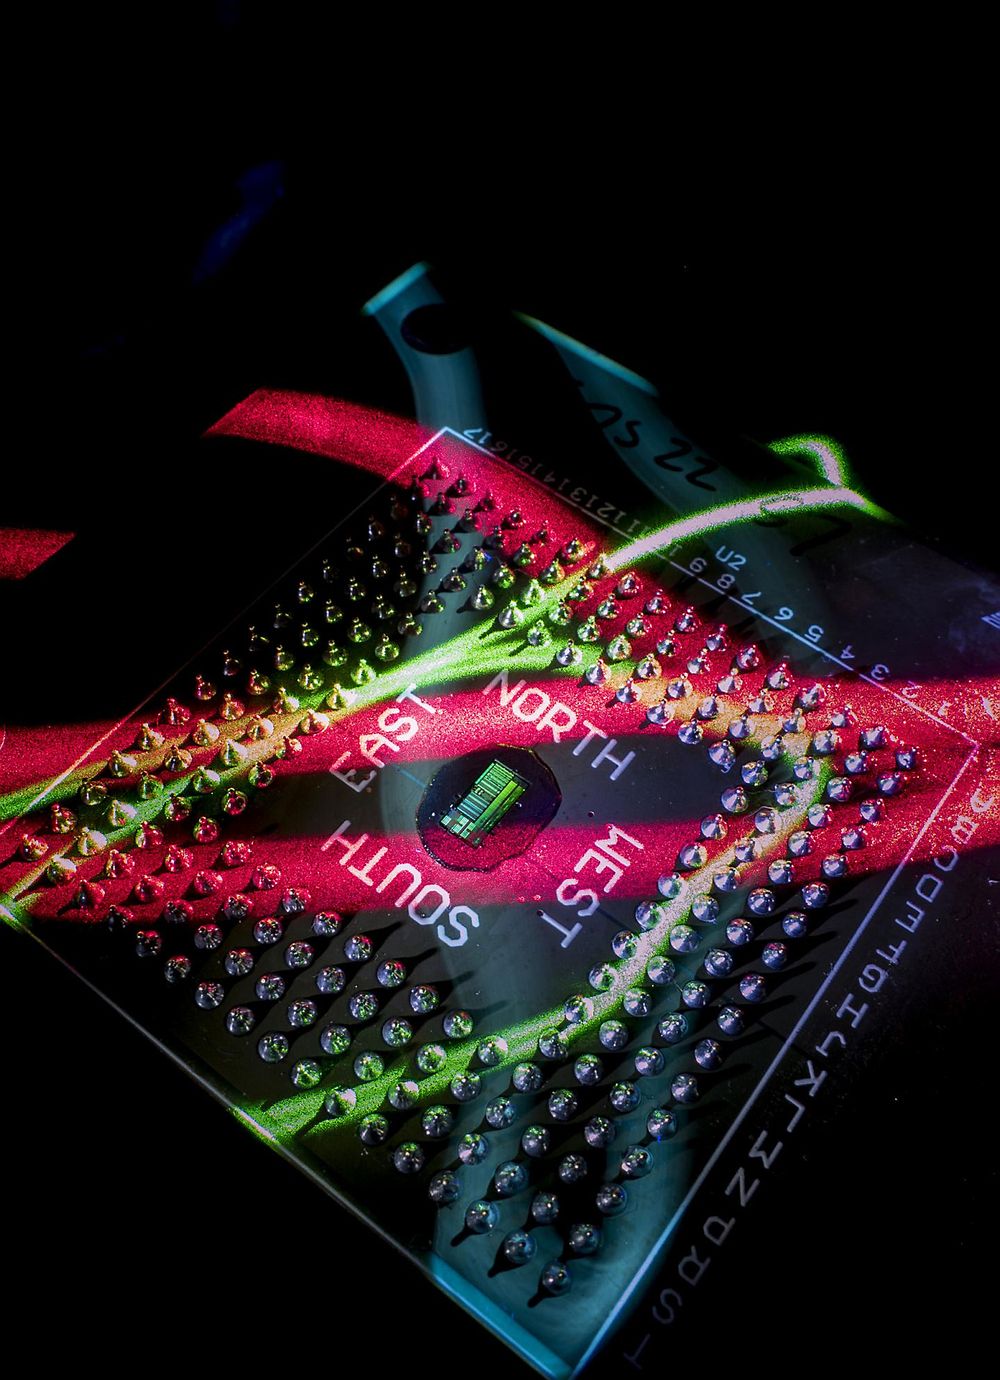 Den elektronikk-fotonikk-baserte prosessorbrikken kommuniserer med omverdenen ved hjelp av lys. De røde og grønne lysbåndene på bildet er lagt til kun for effektens skyld.